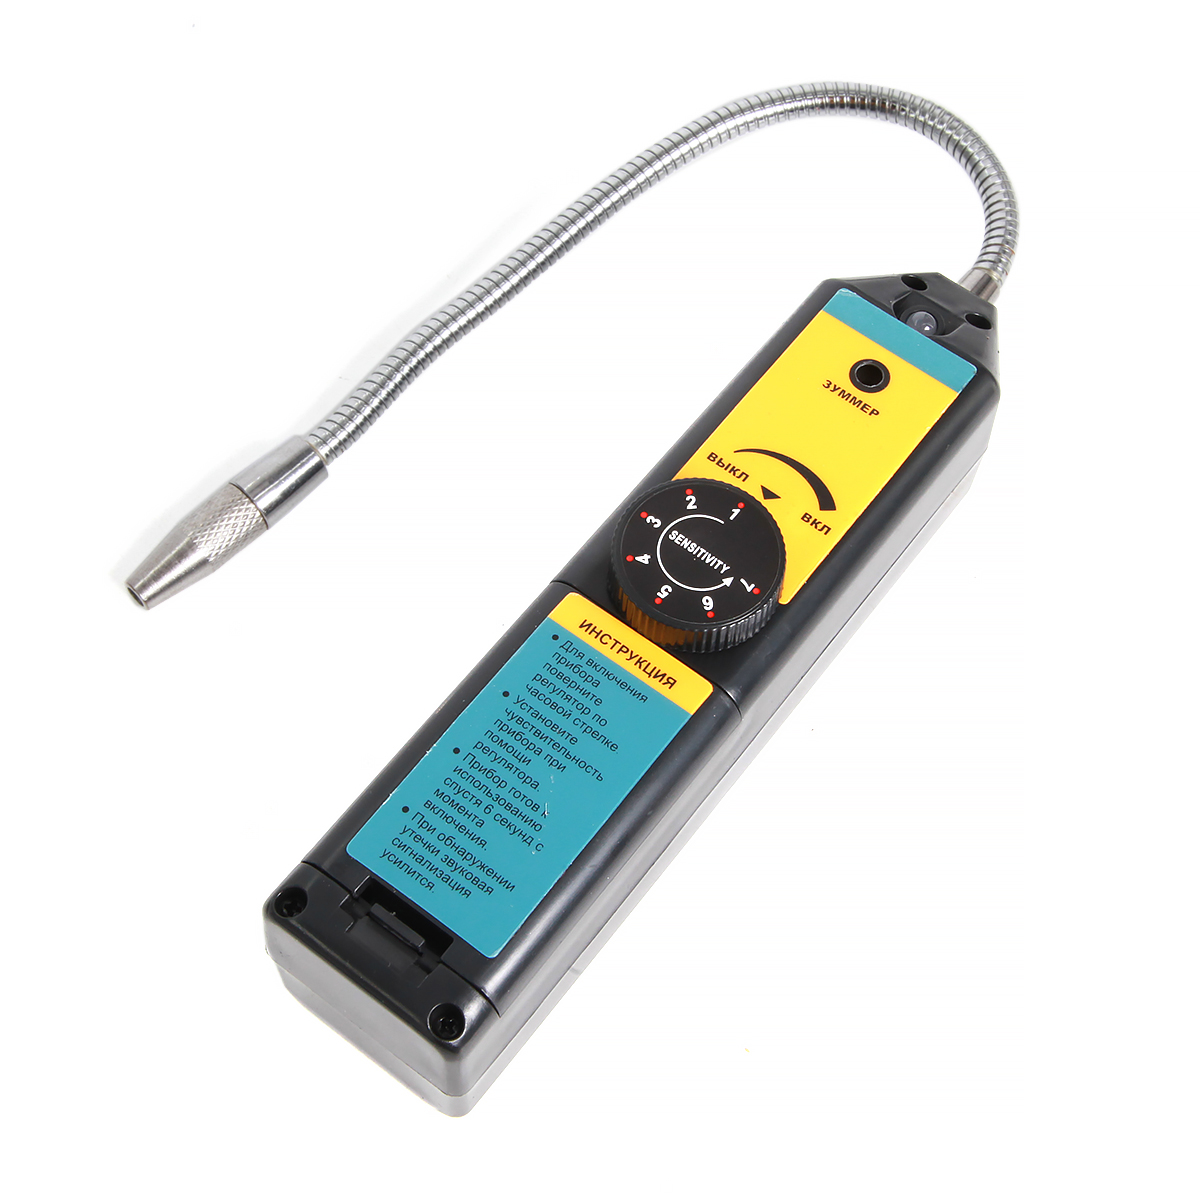 Электронный течеискатель Car-tool с ручной регулировкой CT-M1014